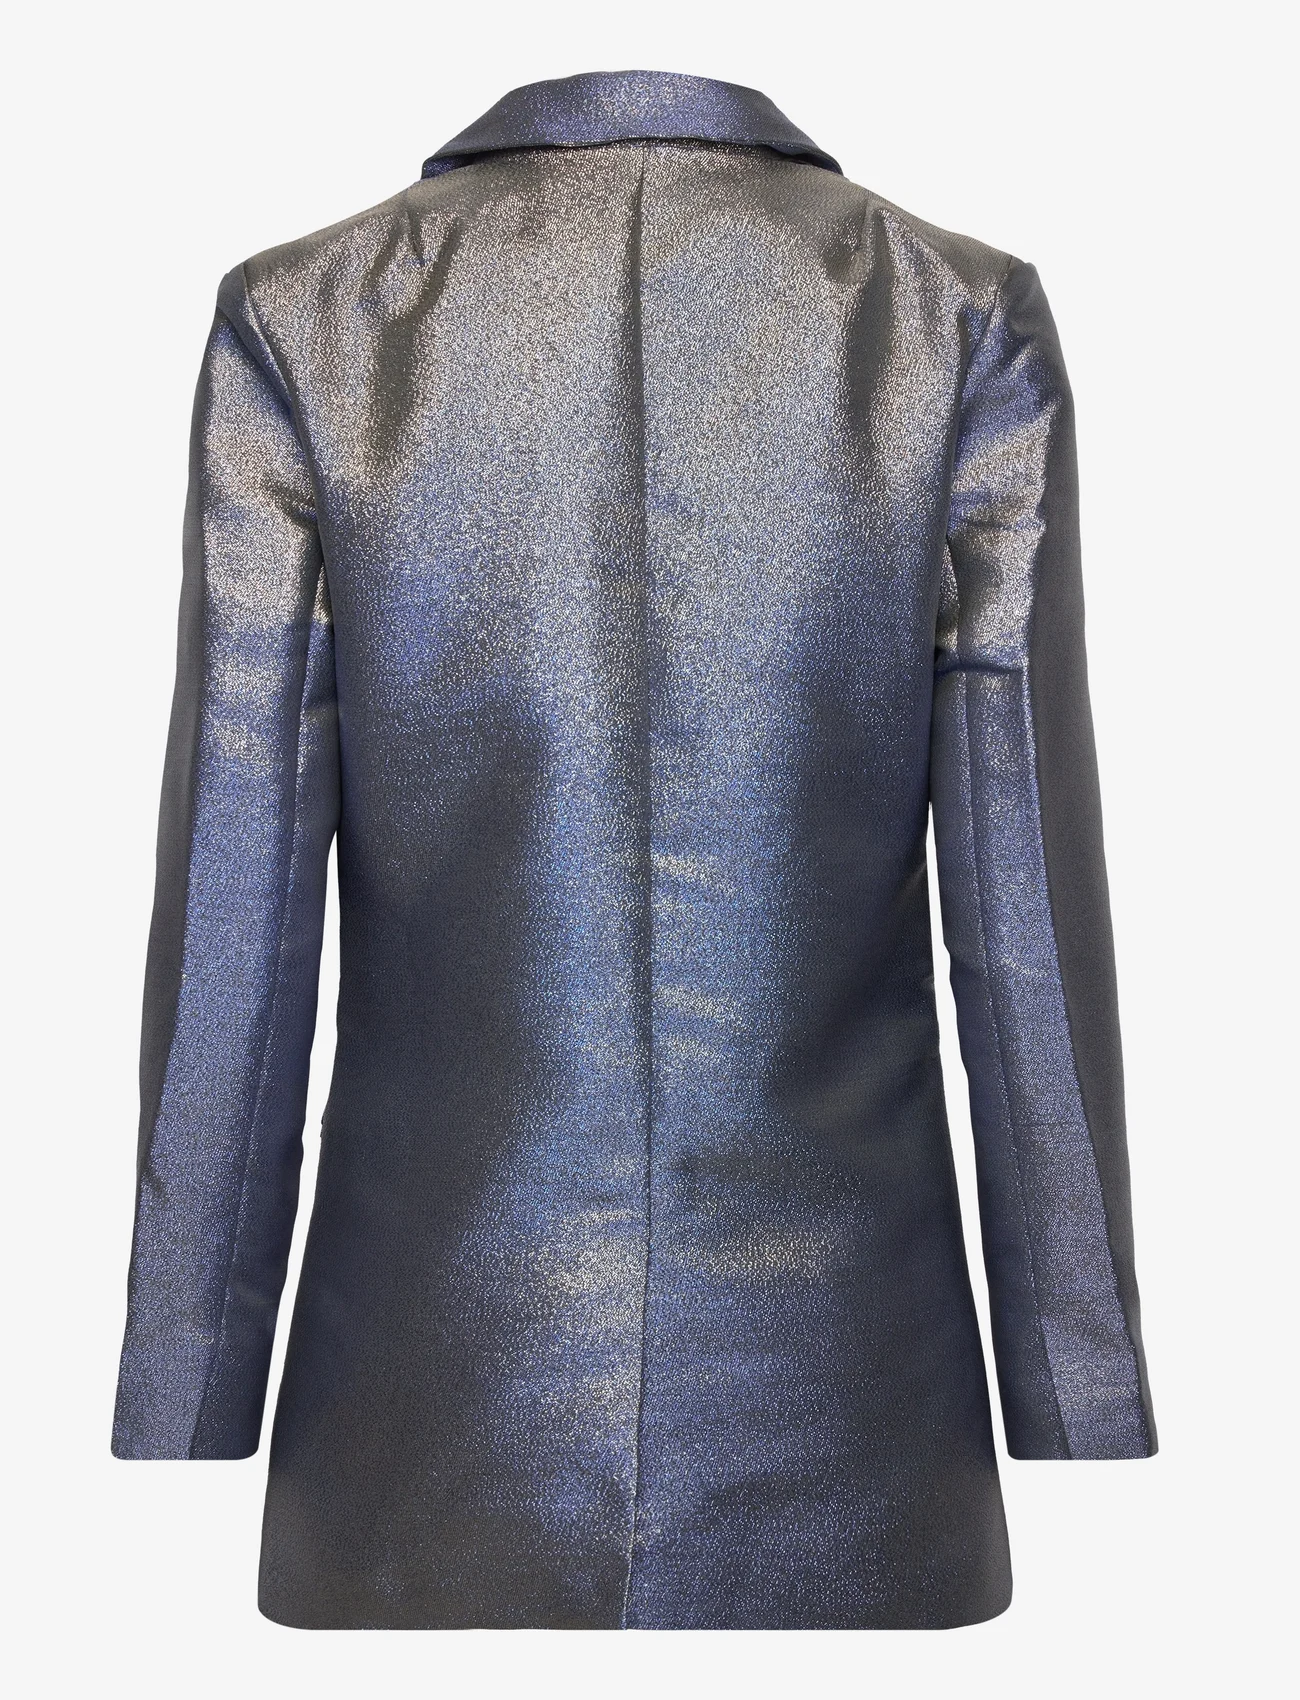 Sofie Schnoor - Blazer - odzież imprezowa w cenach outletowych - metallic blue - 1